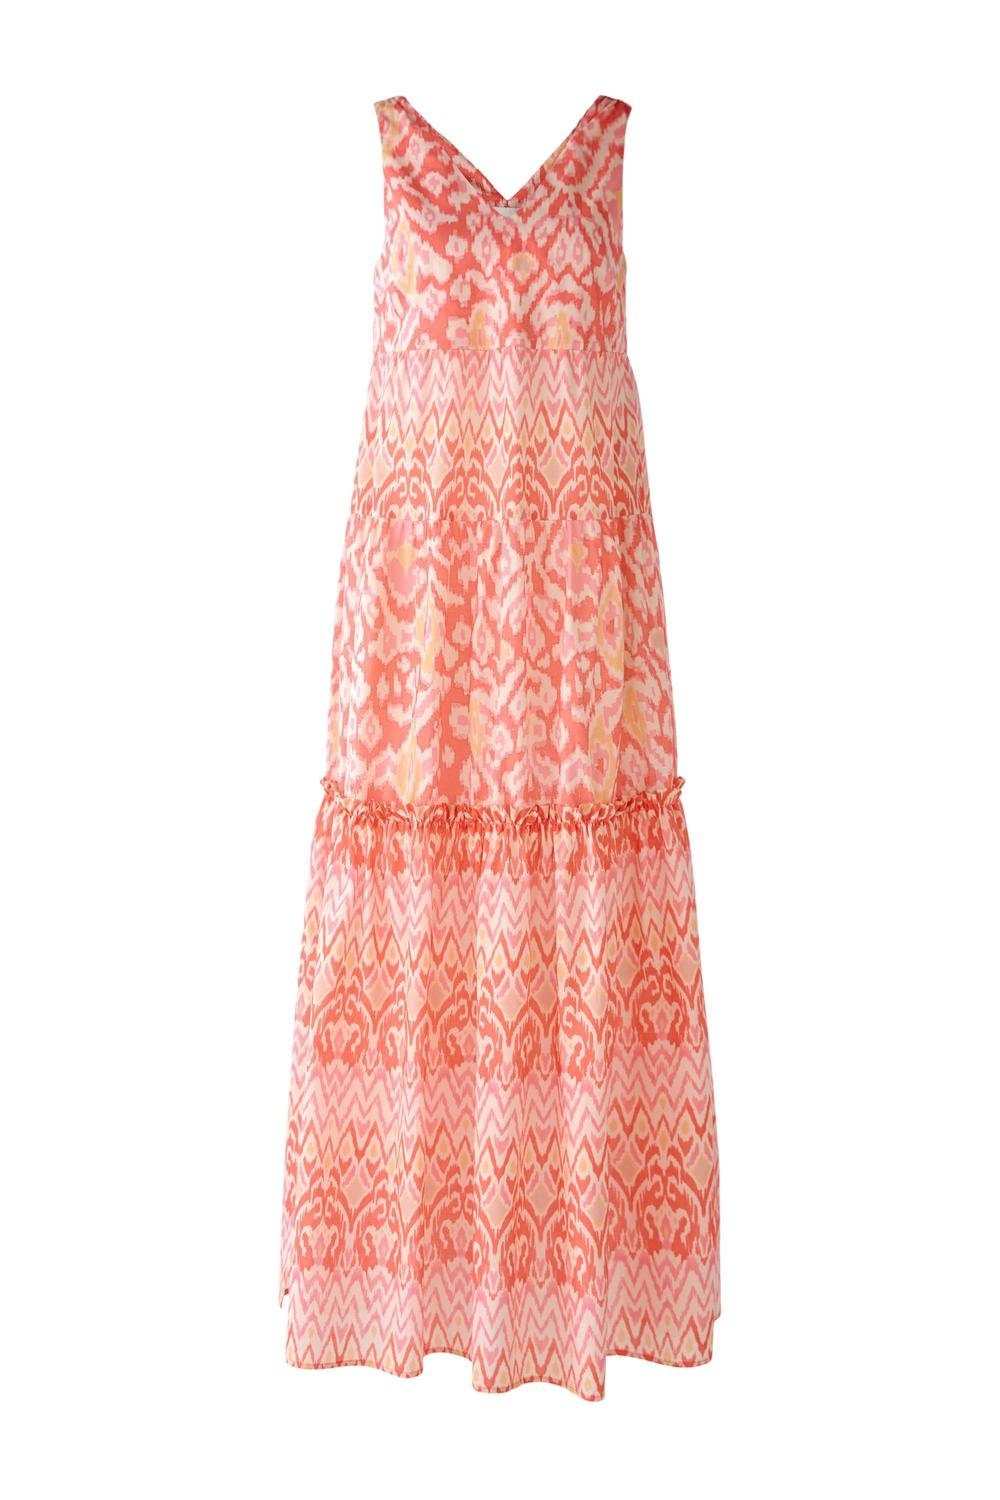 Oui Sommerkleid Kleid, rose orange | Sommerkleider